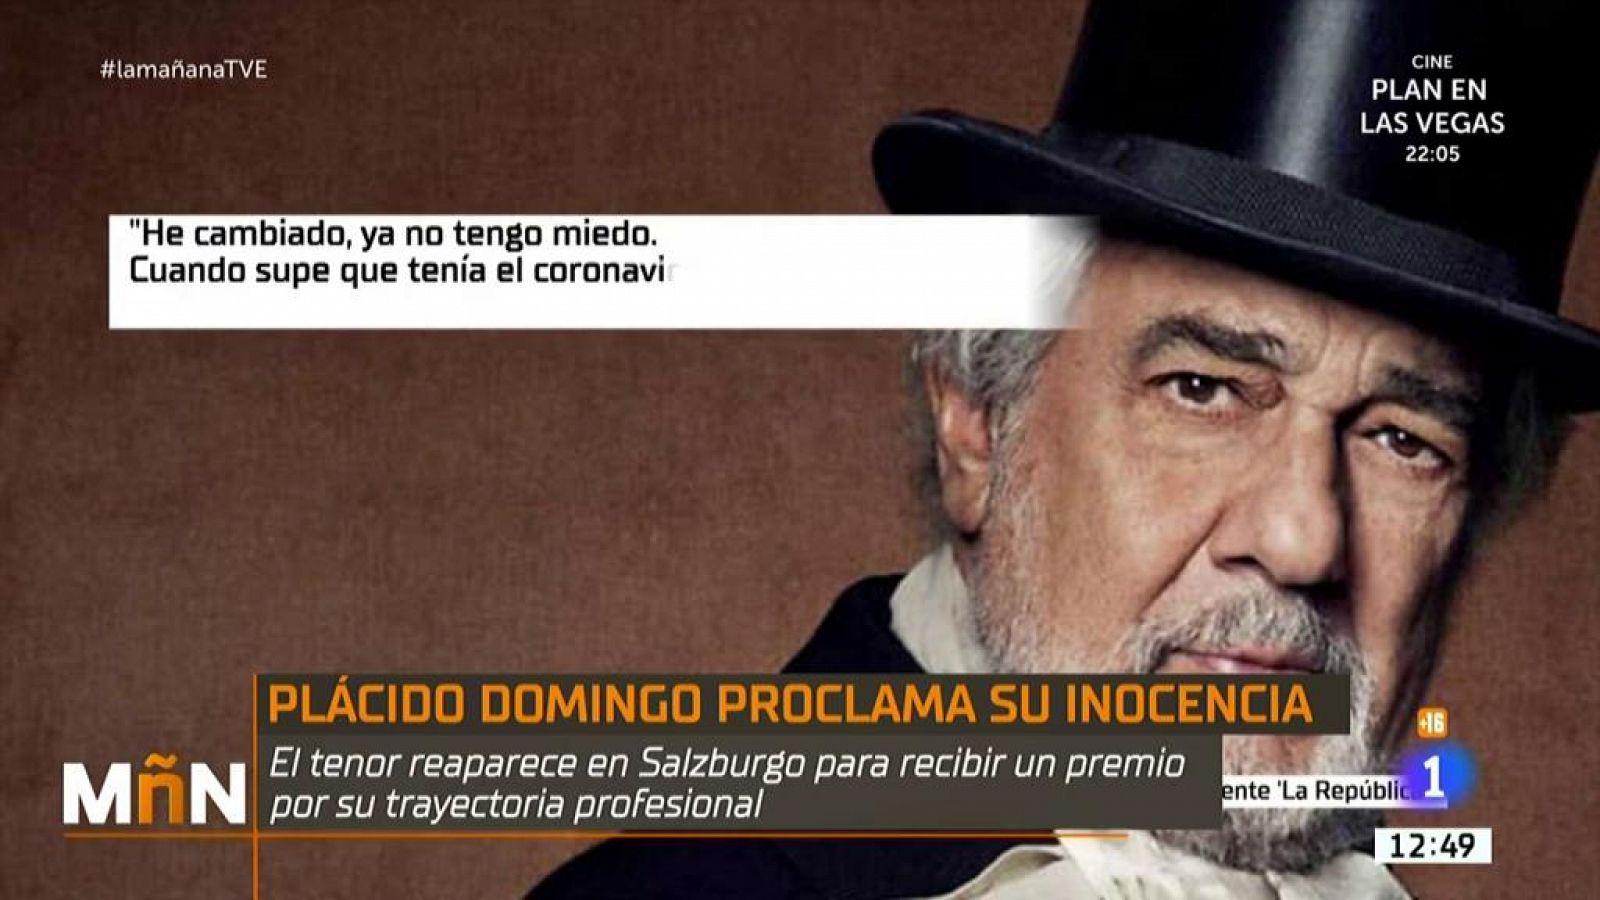 Pácido Domingo se defiende: "Nunca abusé de nadie"